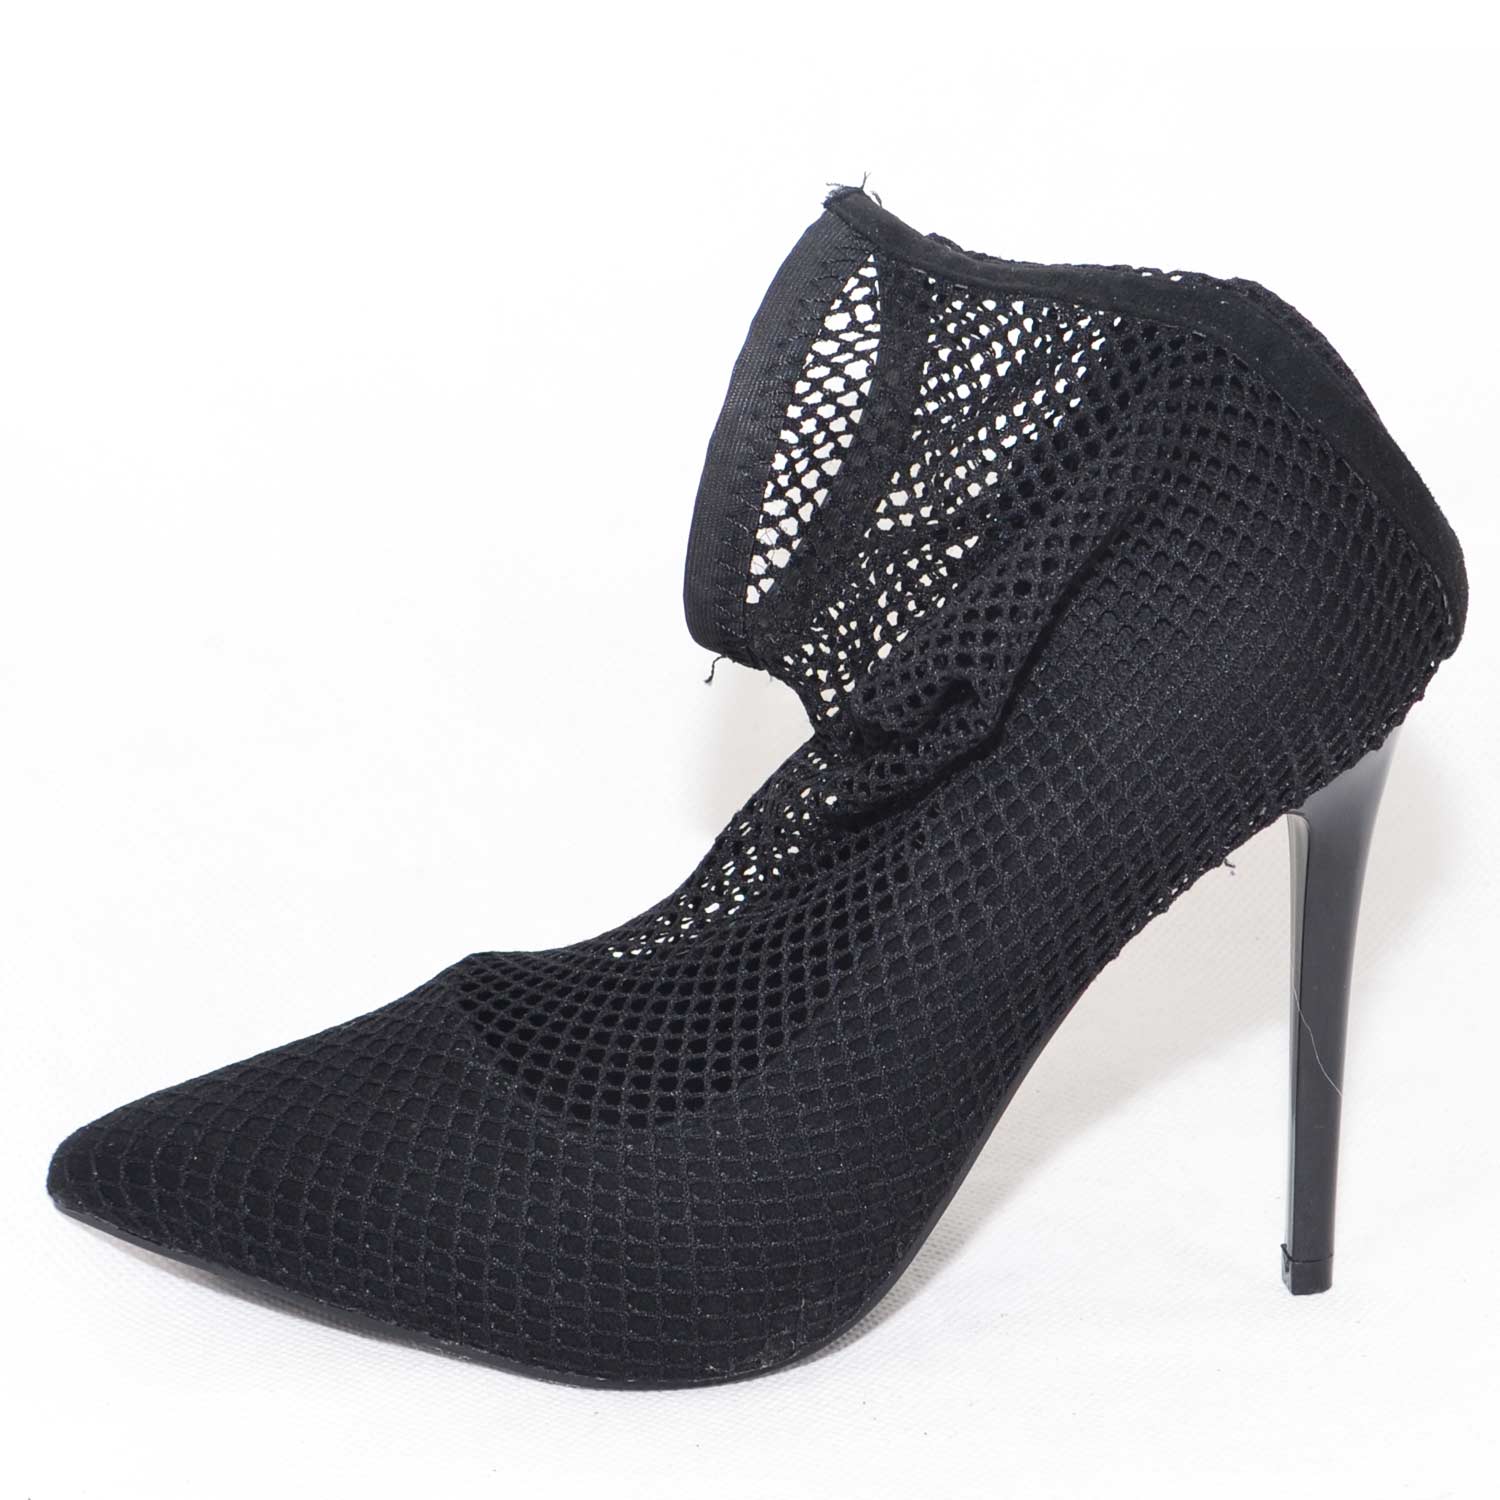 Scarpe donna  in camoscio nero con calzino a rete effetto tronchetto tacco a spillo